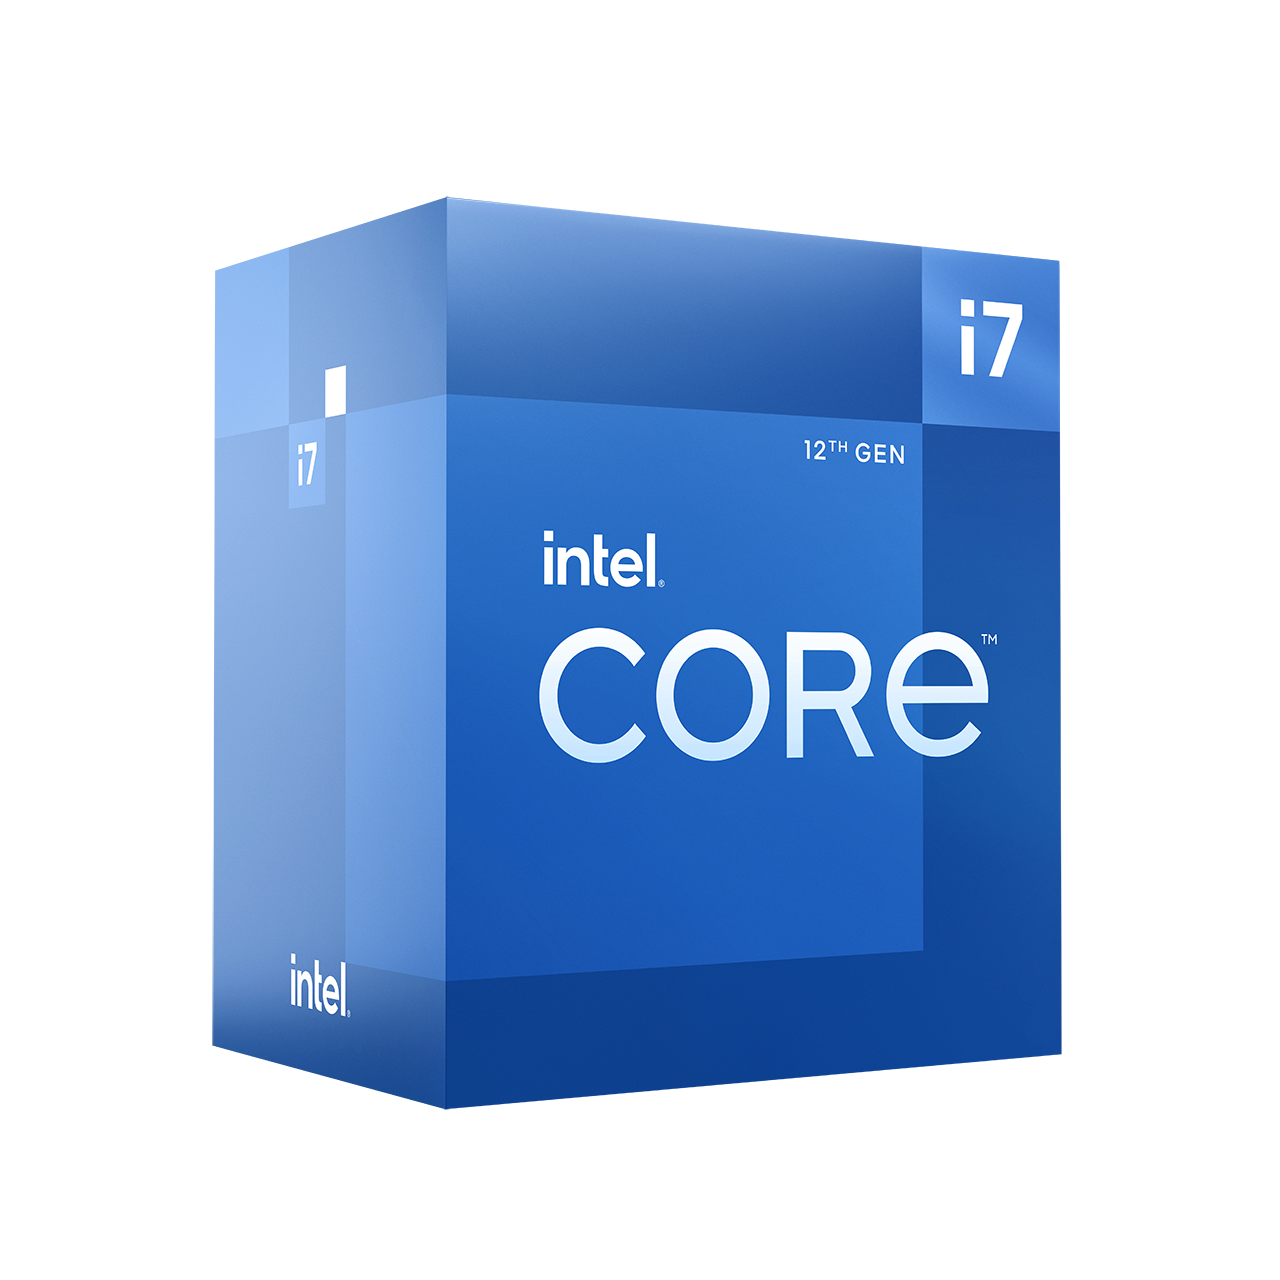 インテル® Core™ i7-12700 プロセッサー - 25M キャッシュ、最大 4.90